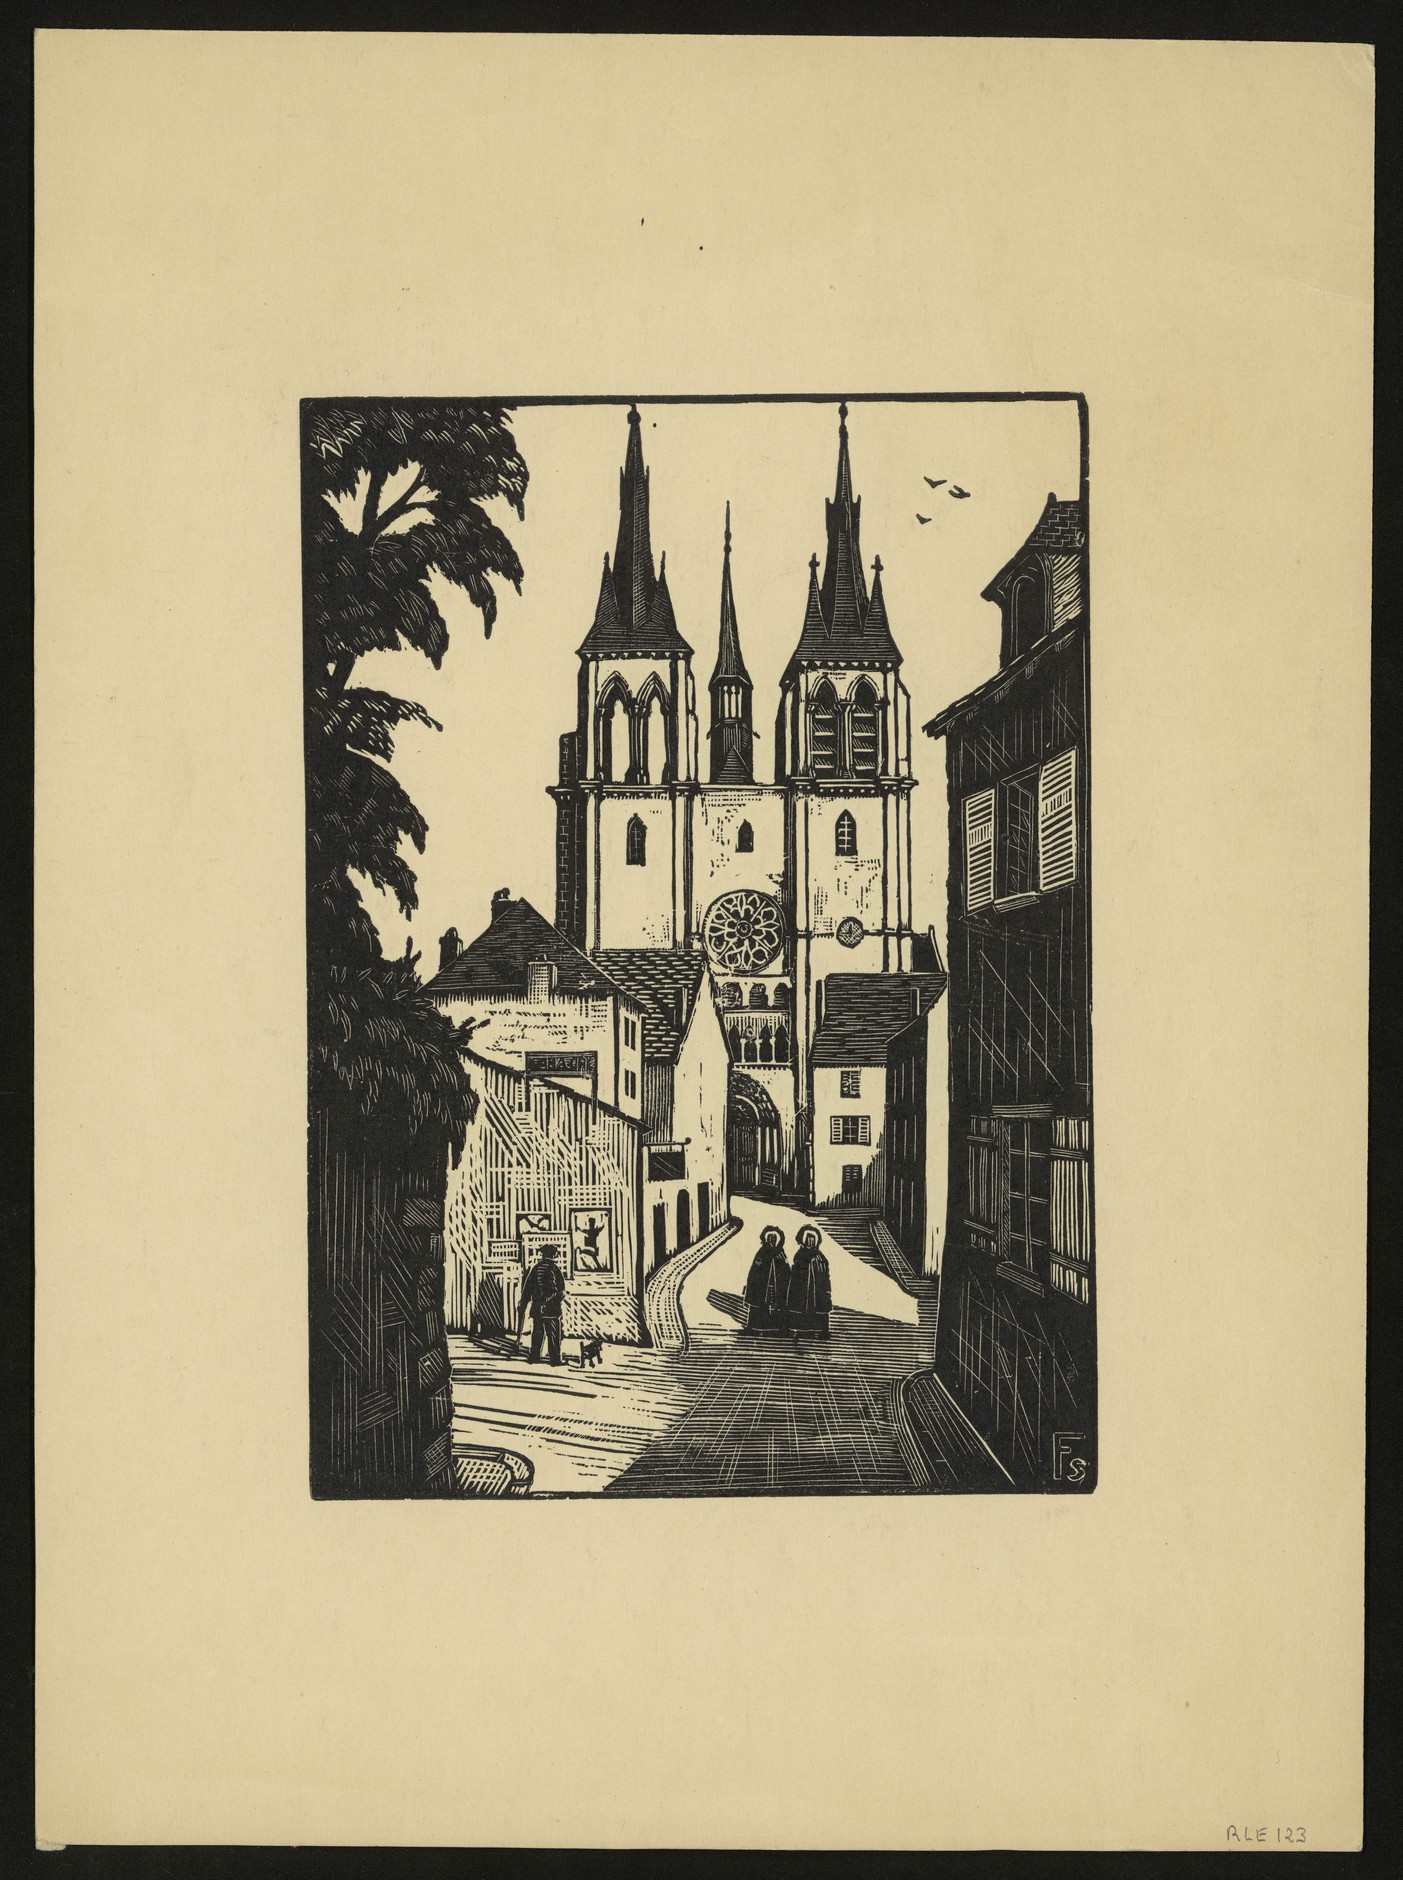 François Sage, Blois, l'église Saint-Nicolas, bois gravé, 1938